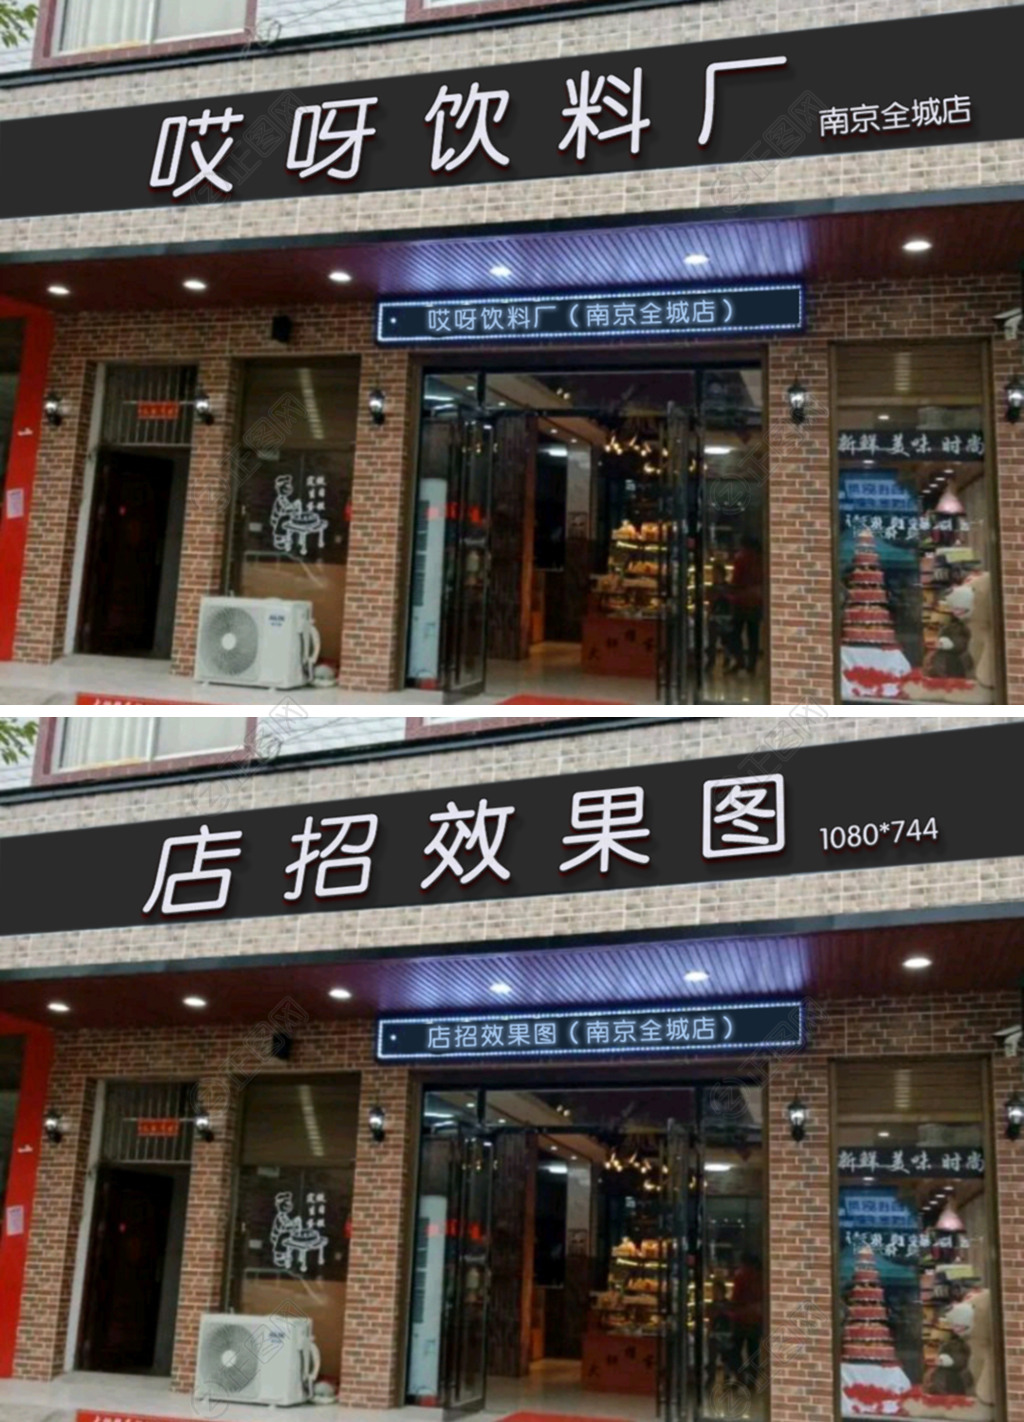 恒馨广告多年户外广告牌制作安装技巧分享-上海恒心广告集团